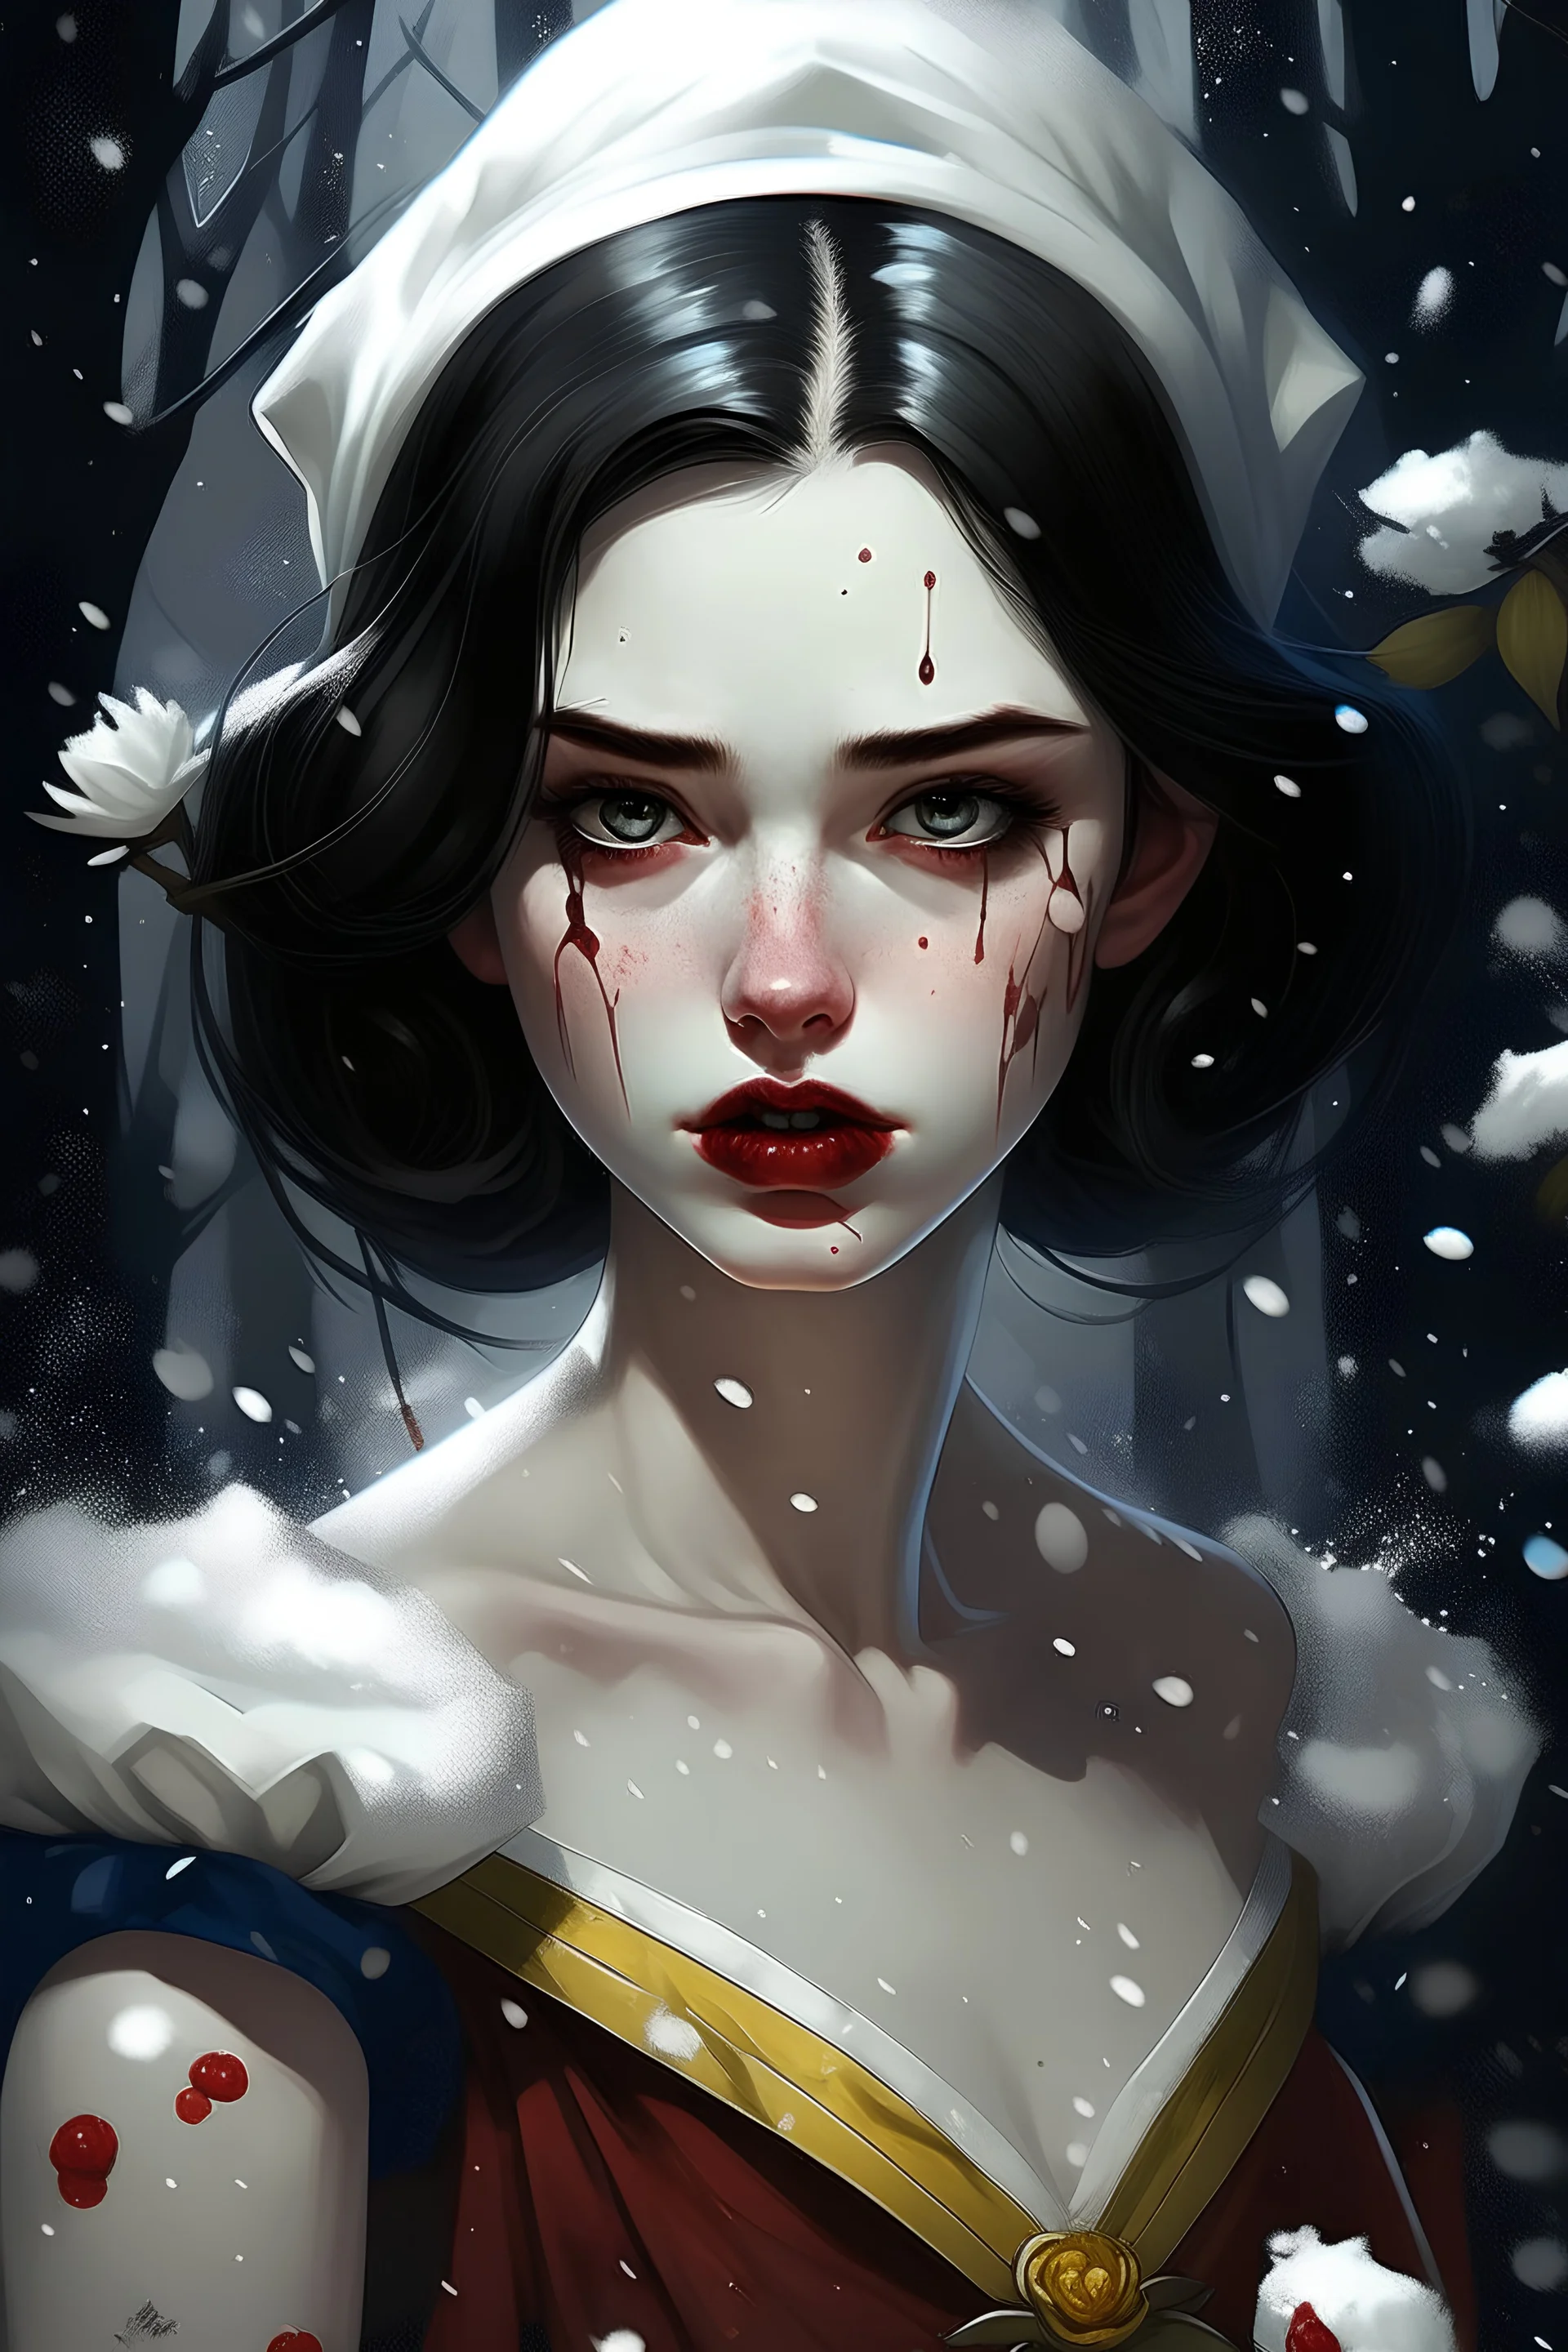 Snow white